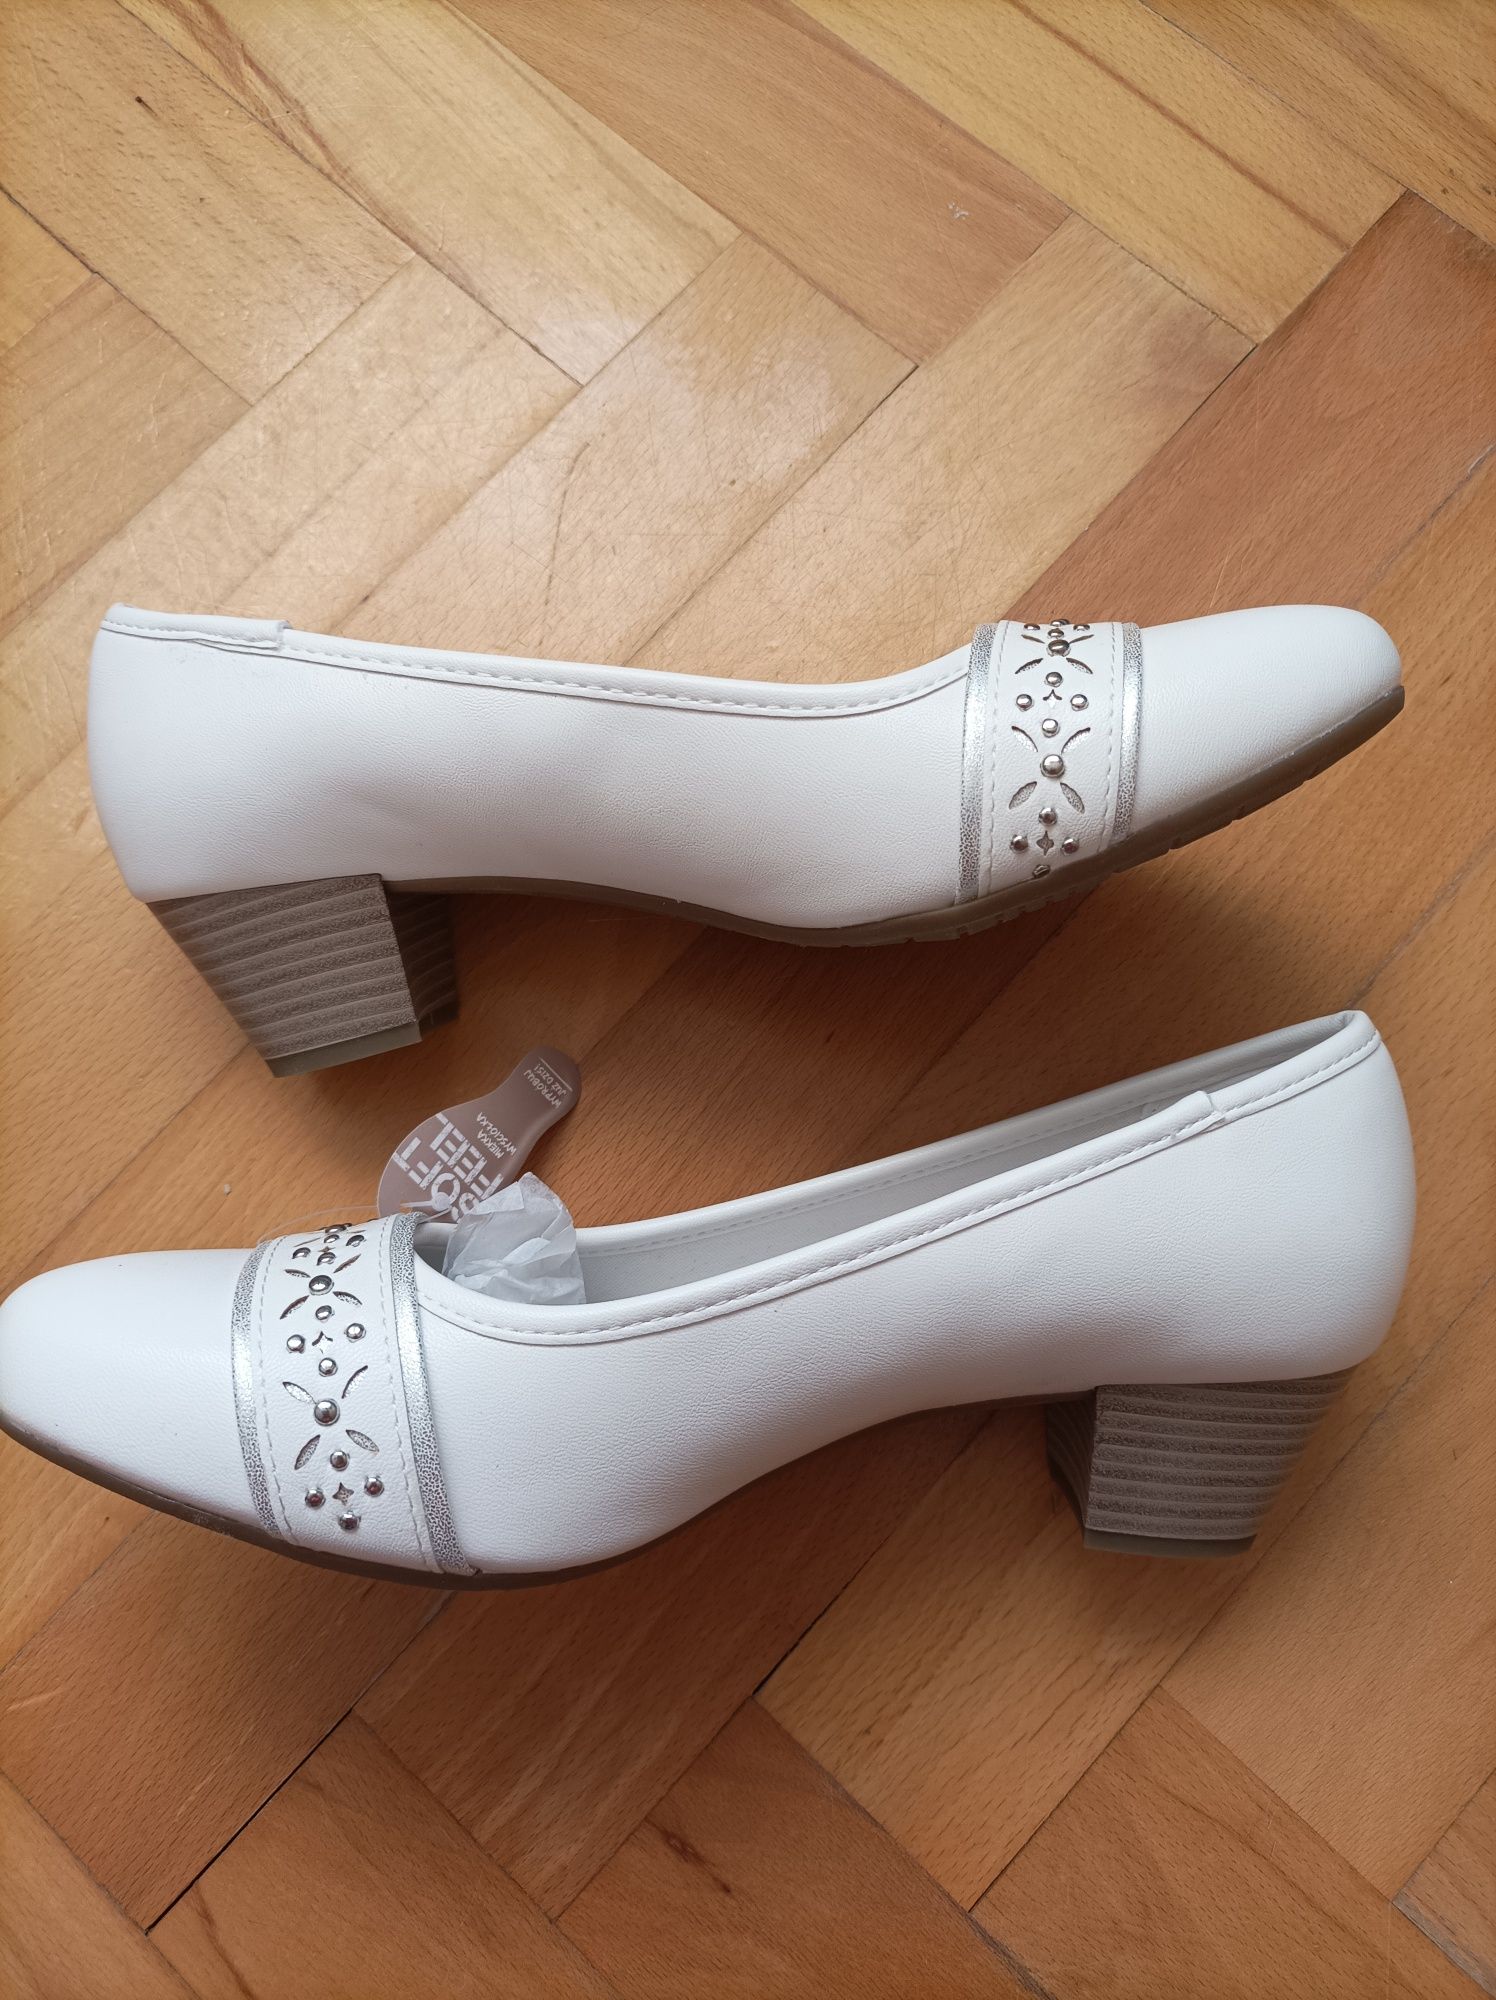 Buty damskie czółenka białe eleganckie na obcasie 38 39 wkładka 26cm